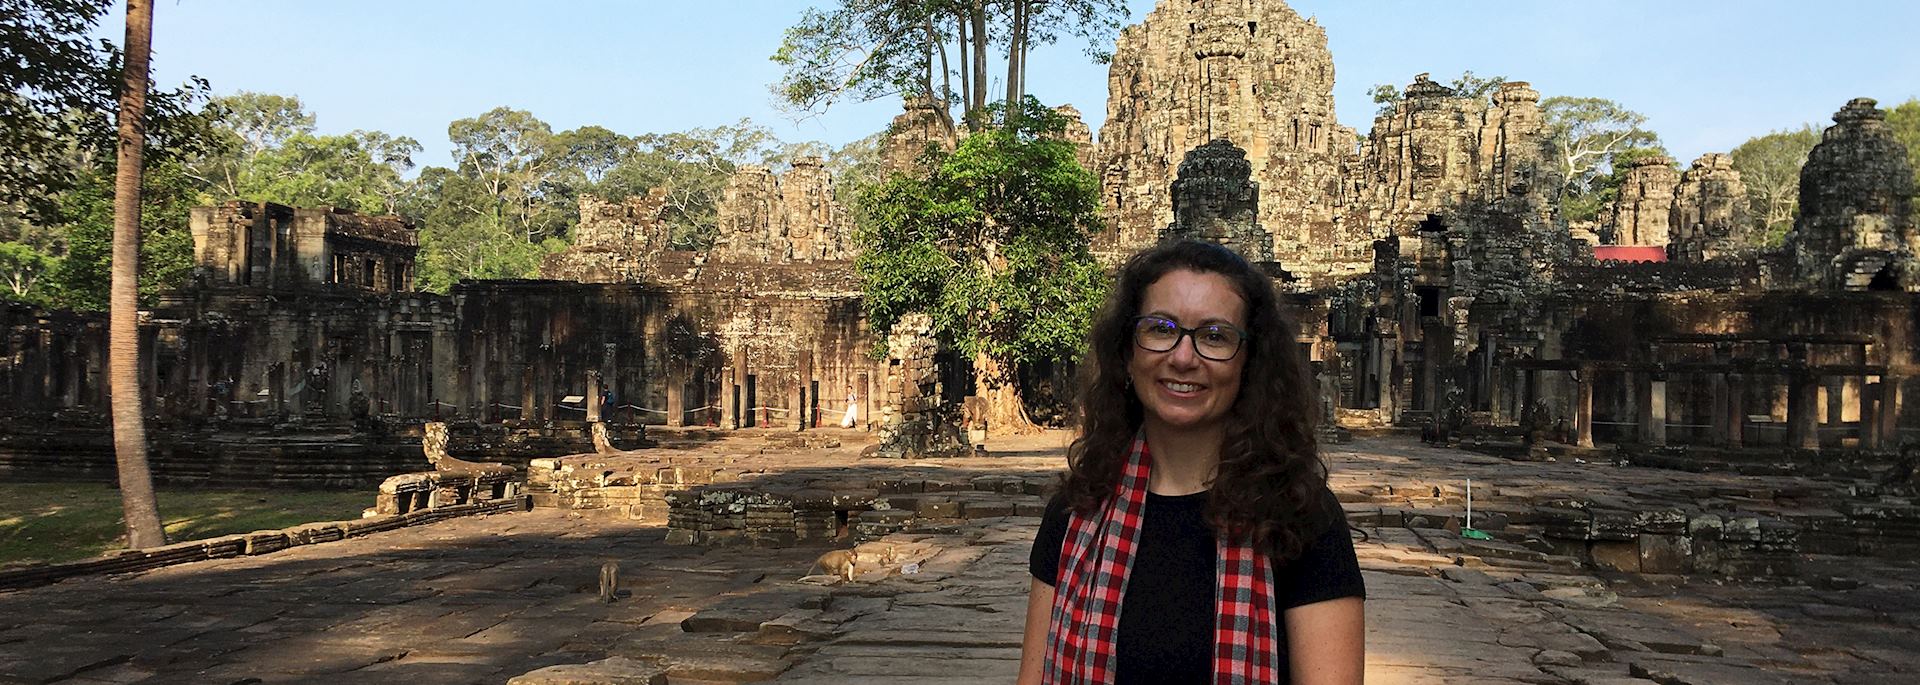 Suzie visiting Ta Prohm Temple, Cambodia